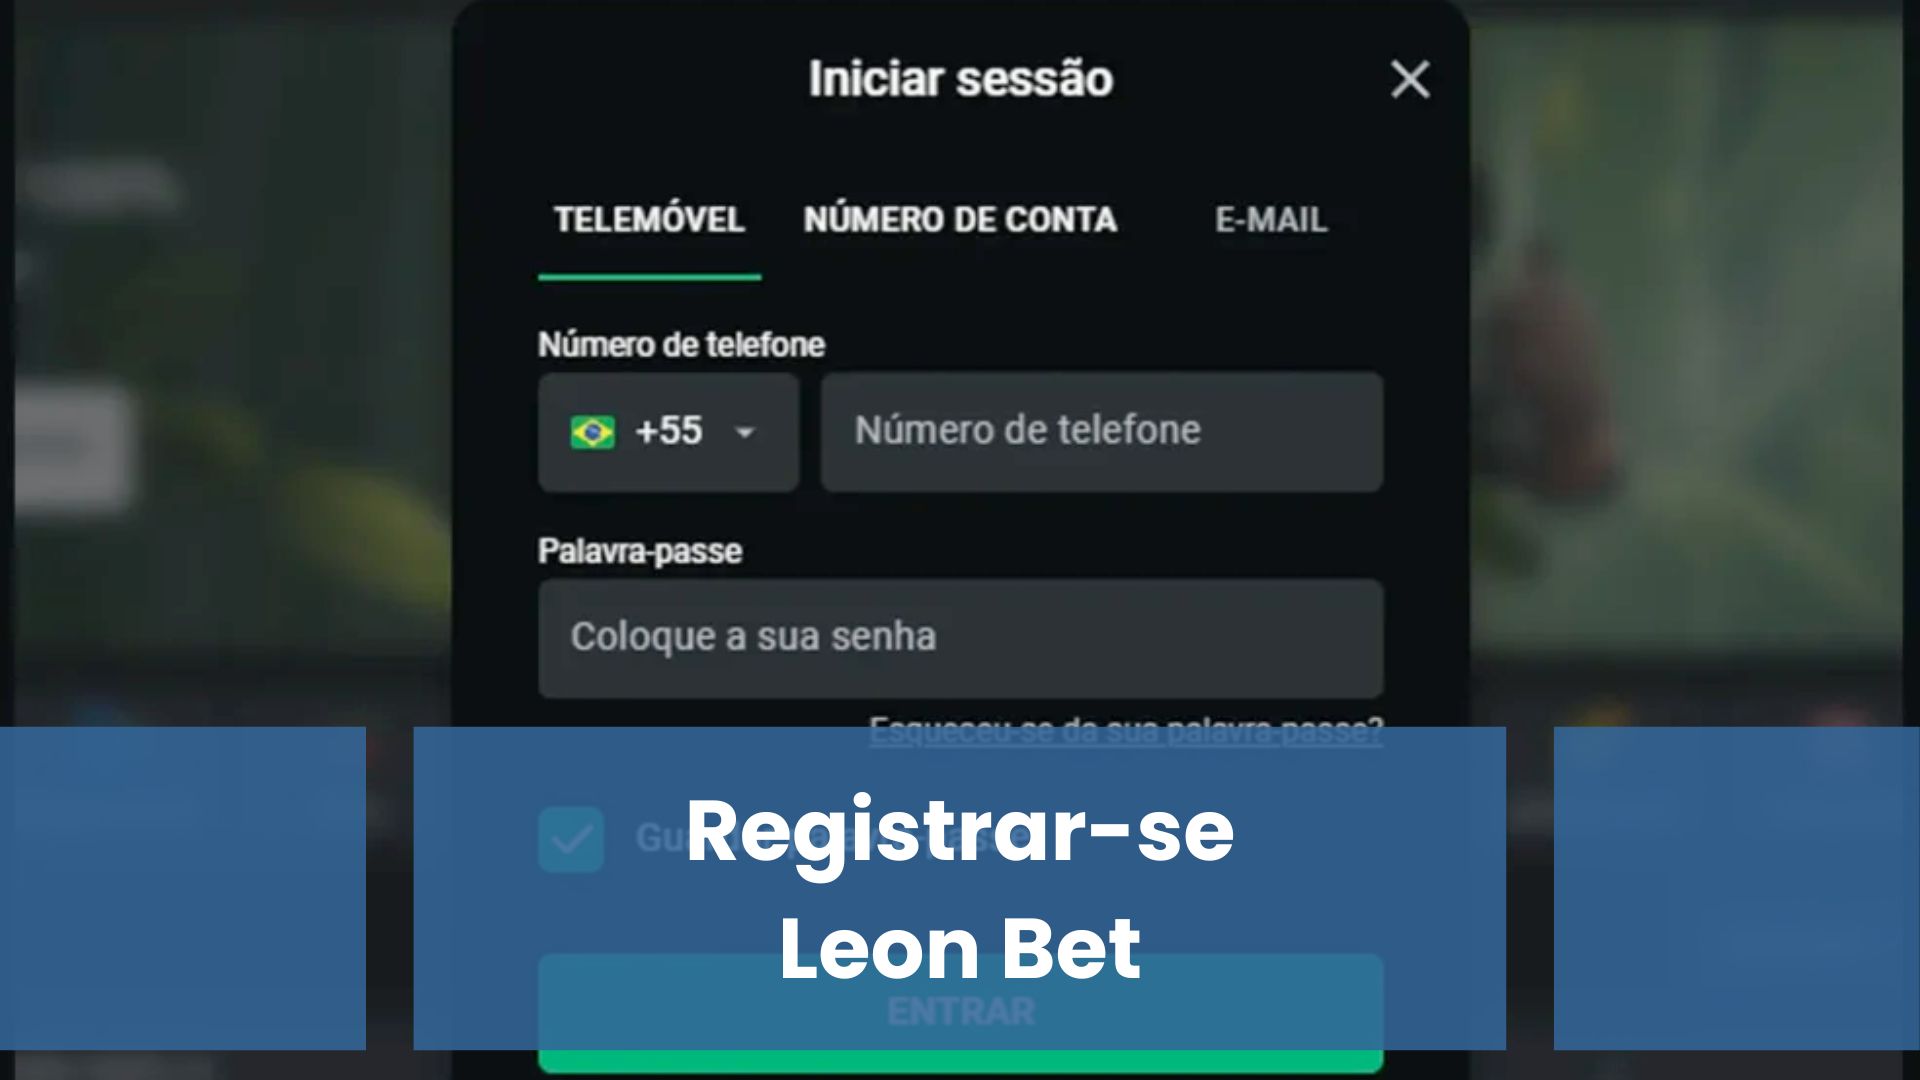 Registrar-se Leon Bet